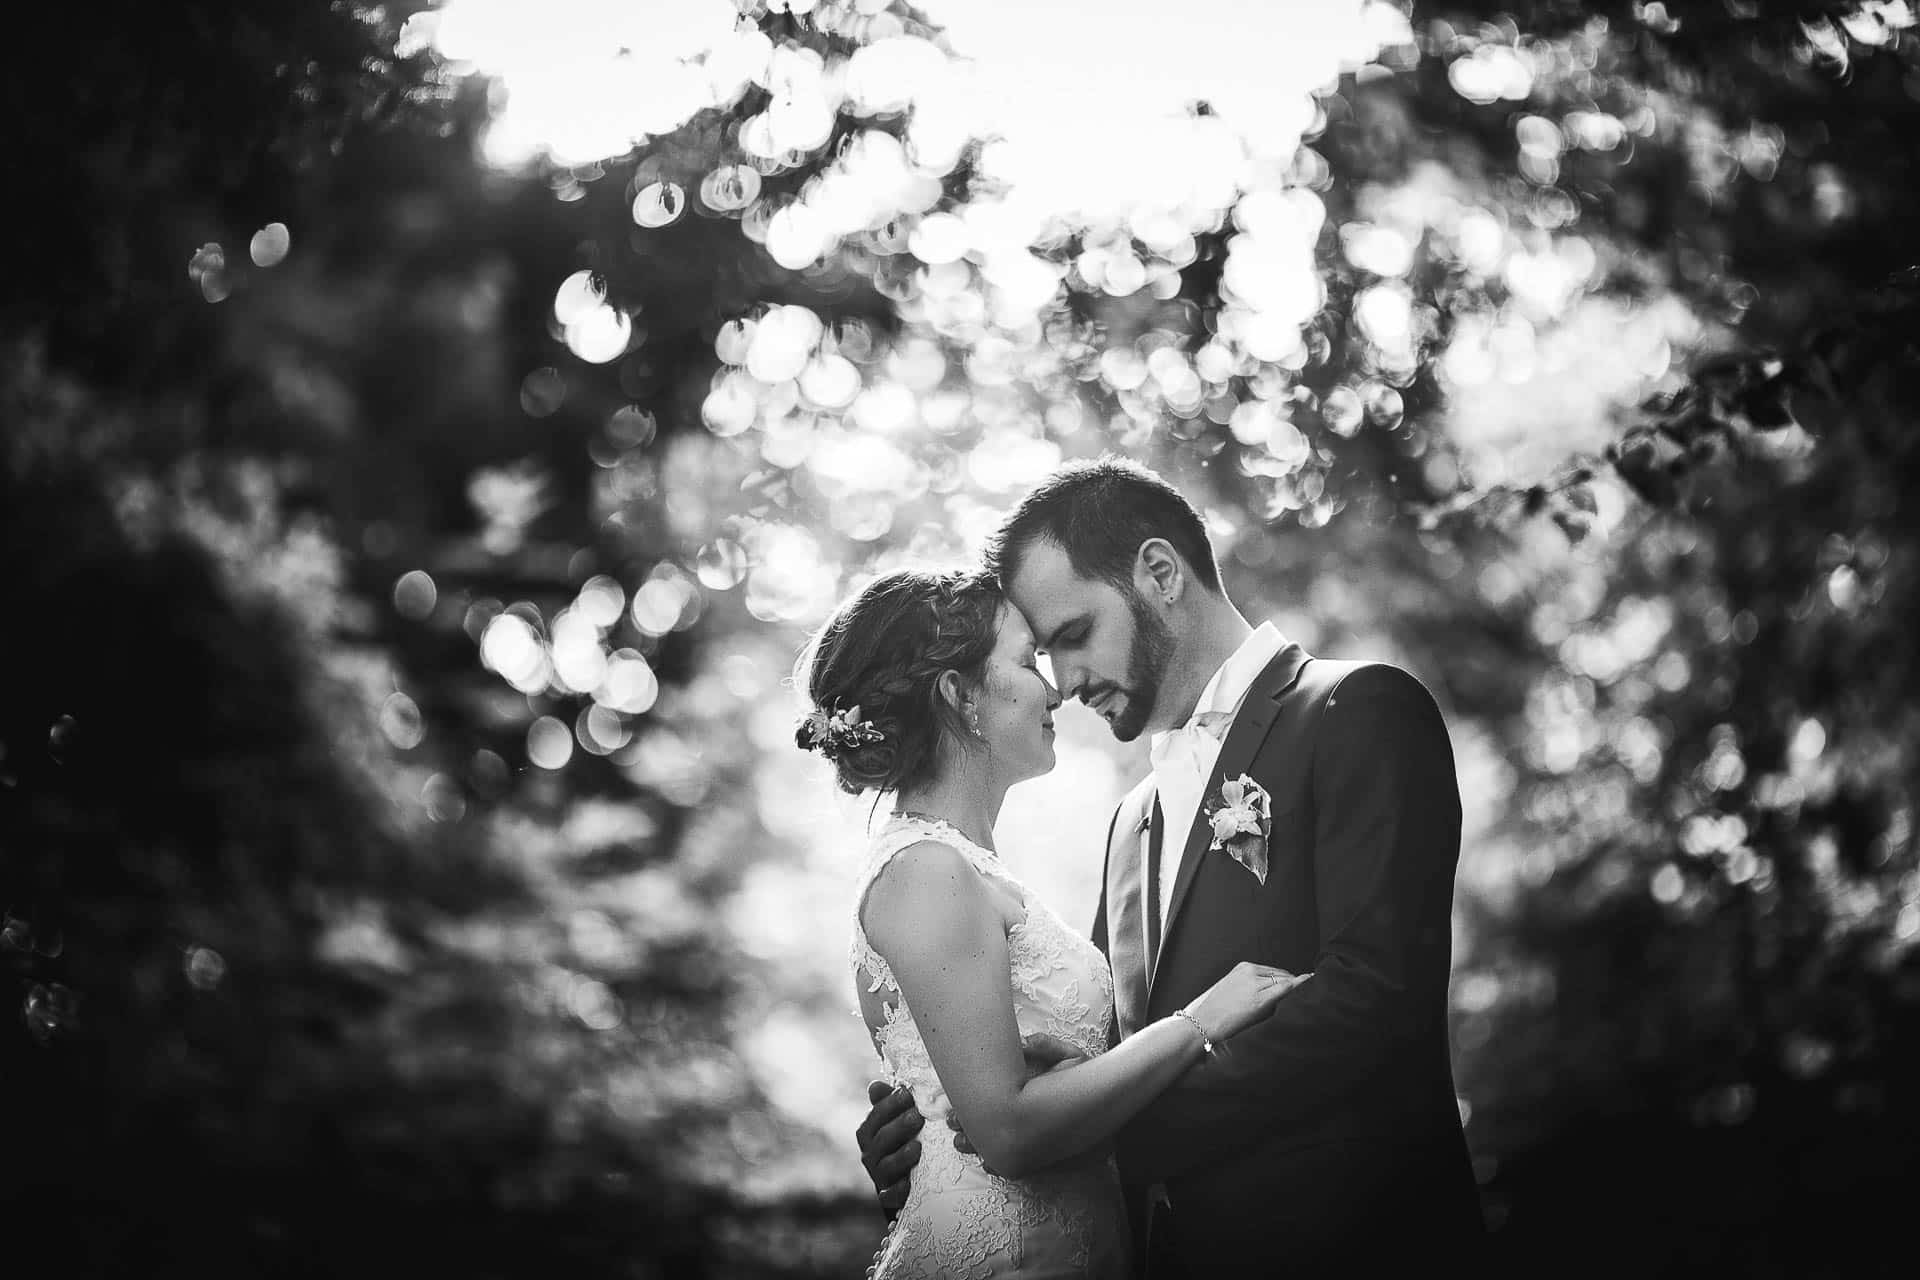 Photographe mariage Geneve - Couple de nouveaux mariés en noir et blanc lors d'une séance photo